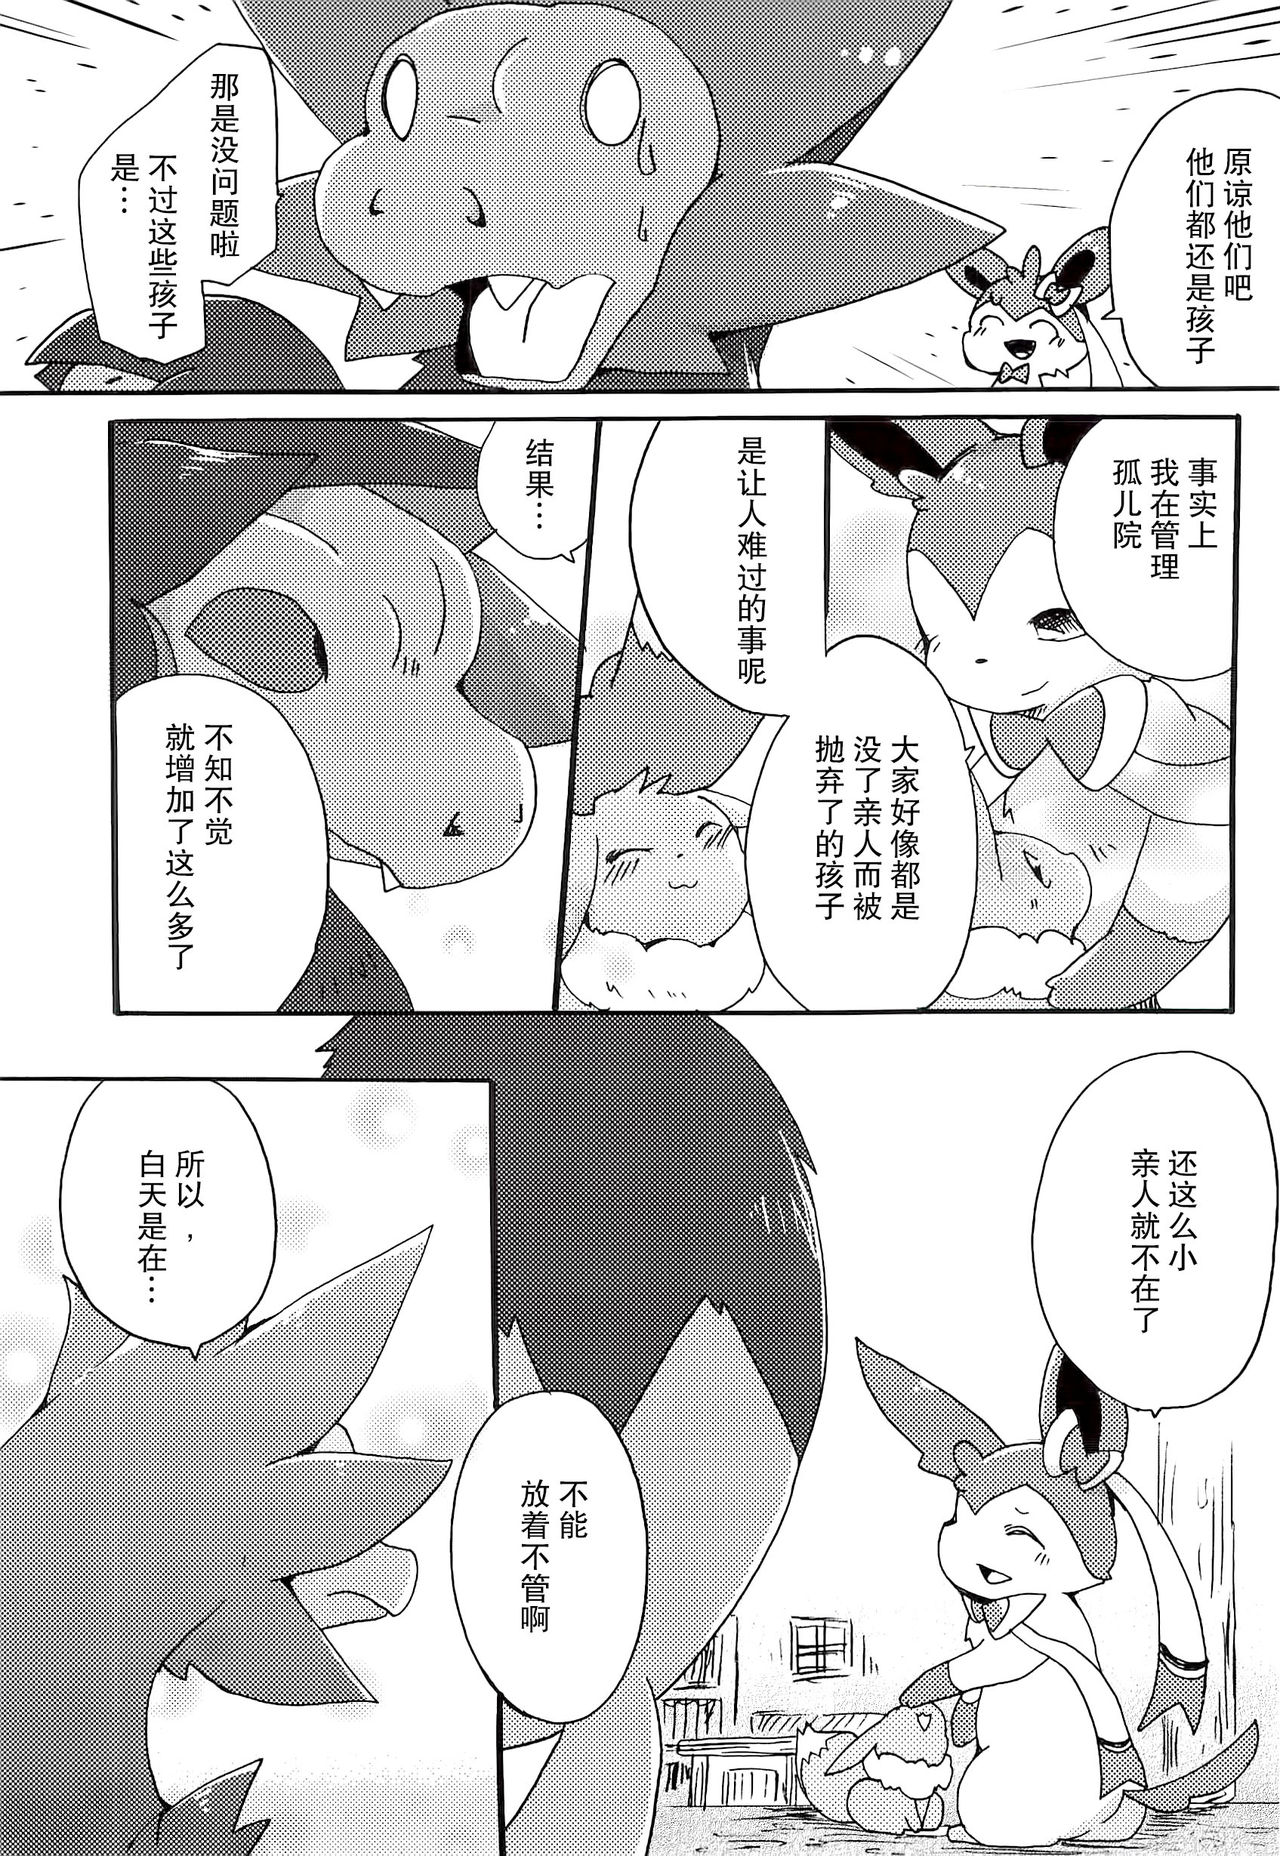 (Kansai! Kemoket 2) [Kemono no Koshikake (Azuma Minatu)] Sweet night (Pokémon) [Chinese] [无毒汉化组] (関西!けもケット2) [けもののこしかけ (東みなつ)] Sweet night (ポケットモンスター) [中文翻譯]